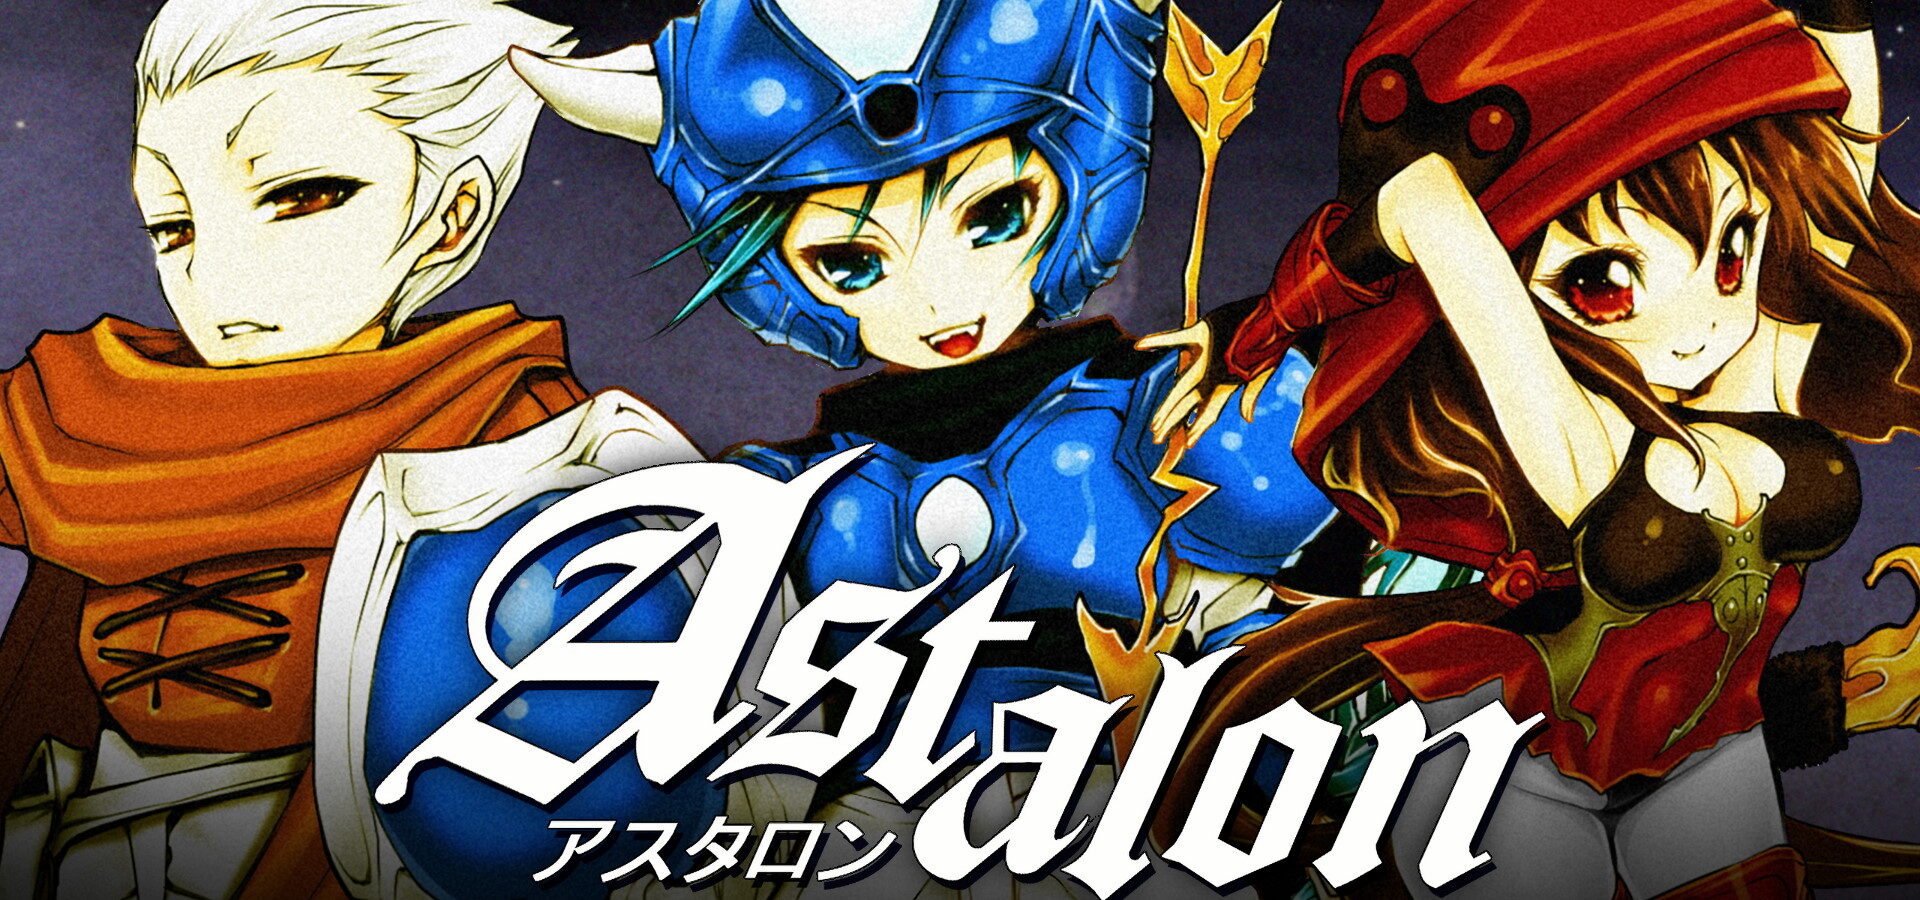 Astalon: Tears of the Earth